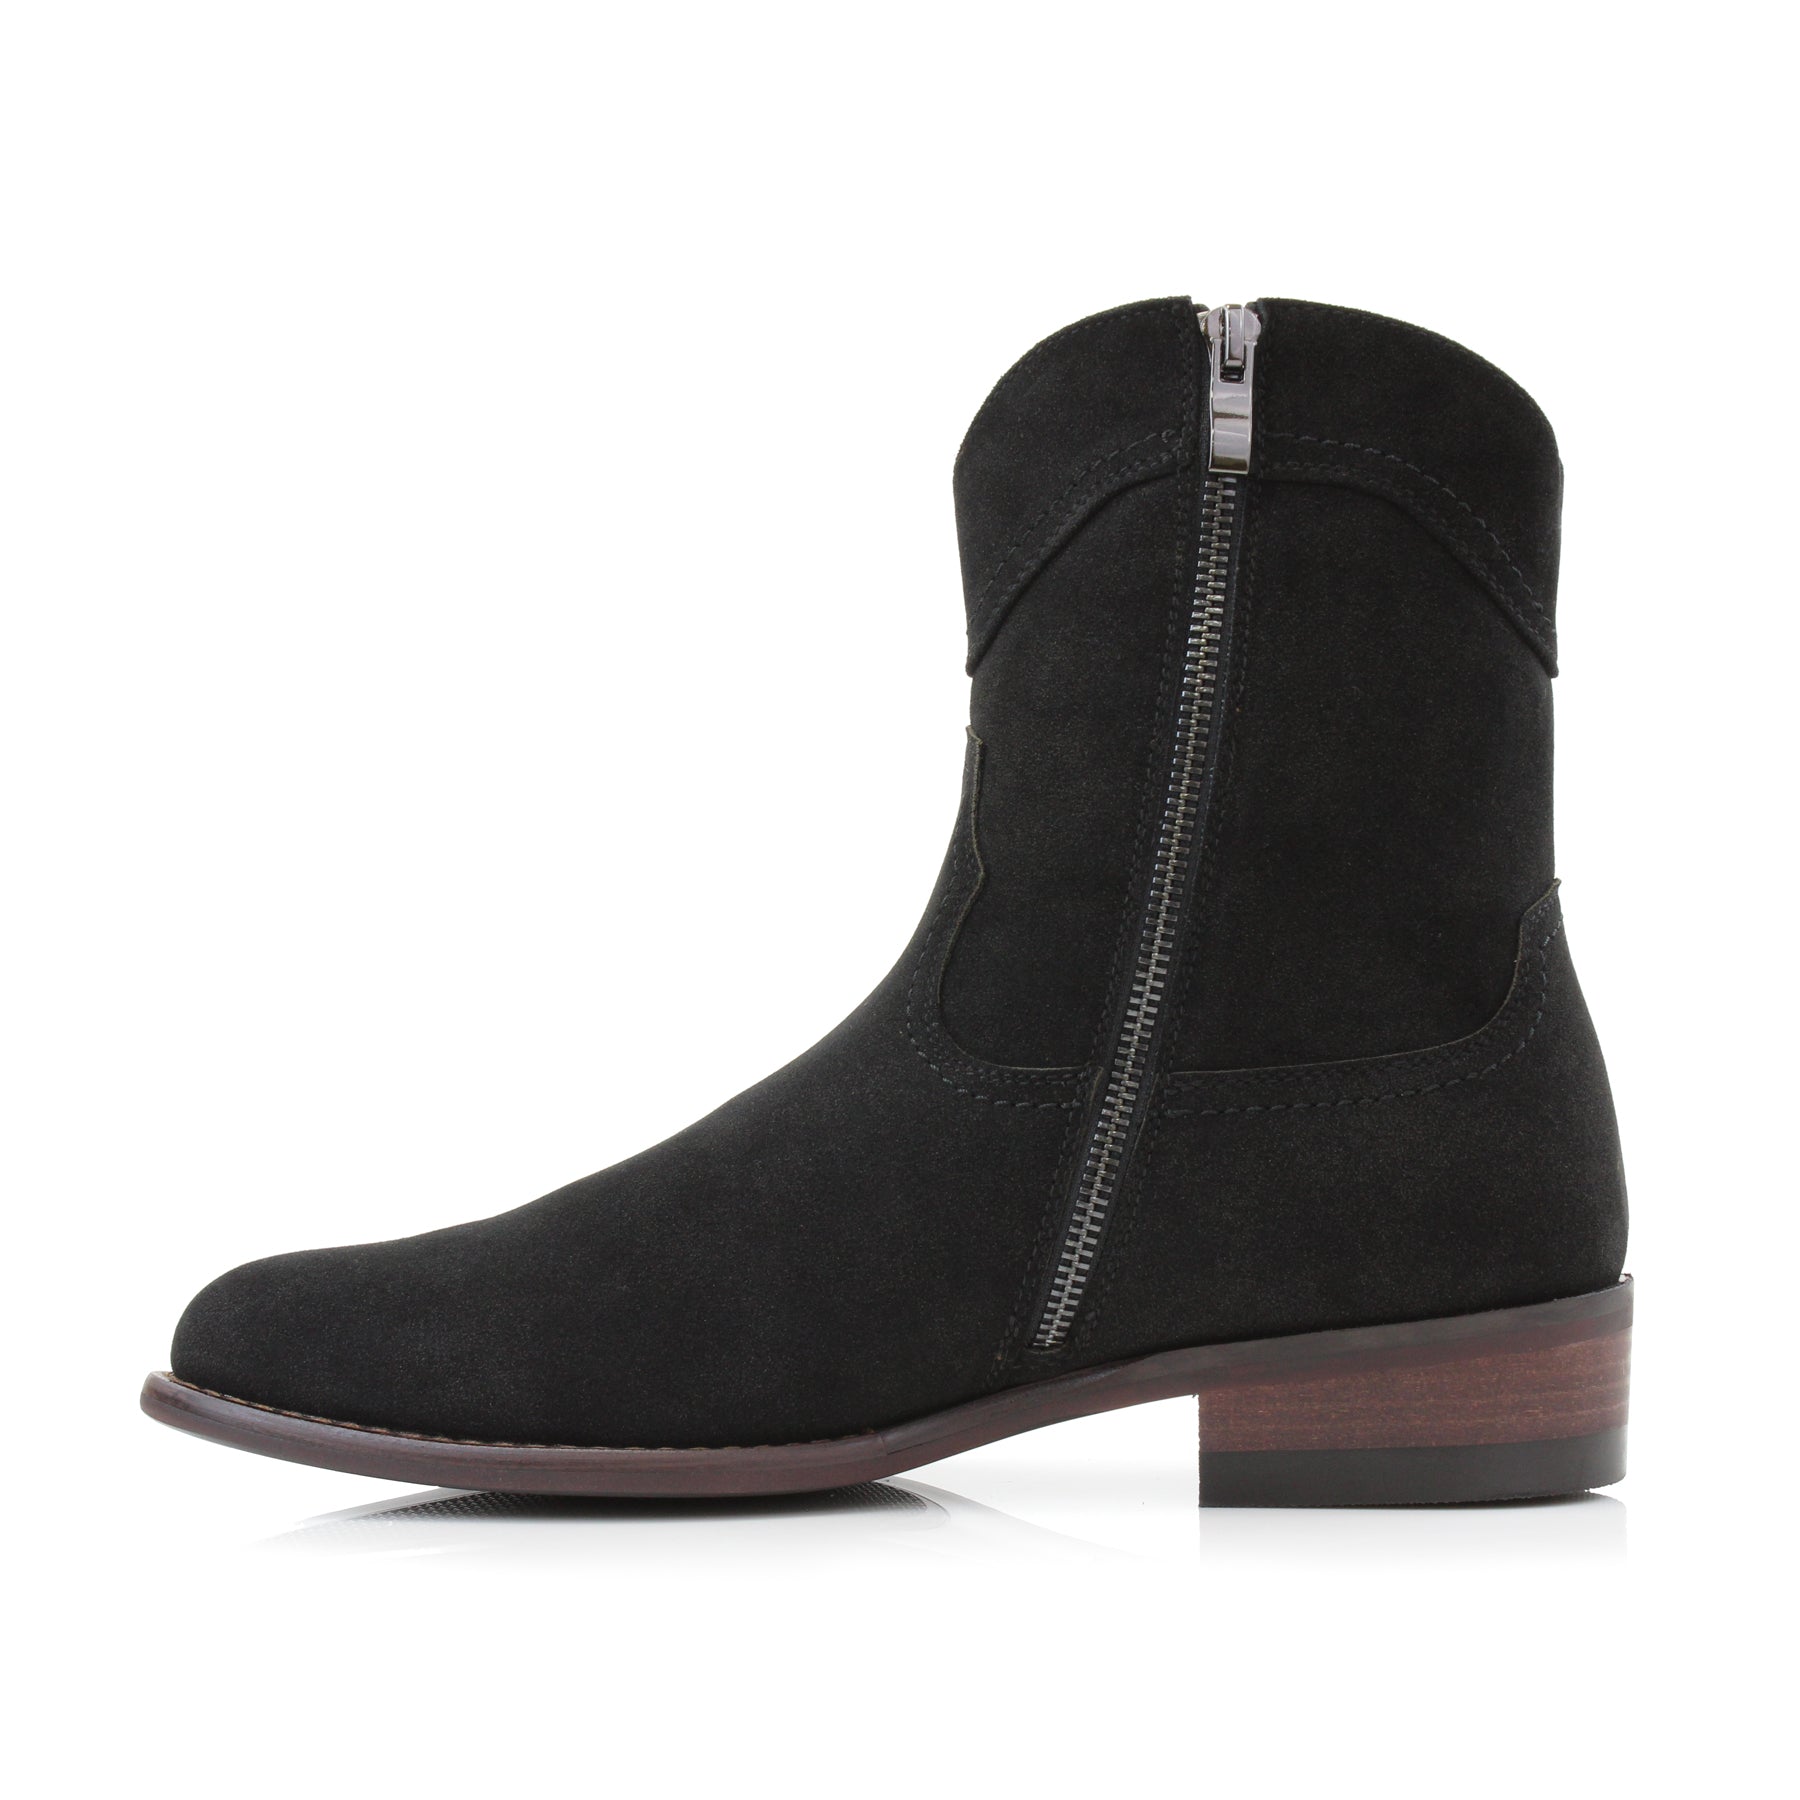 Men's Suede Western Boots | Austin by Ferro Aldo | Conal Footwear | Inner Side Angle View